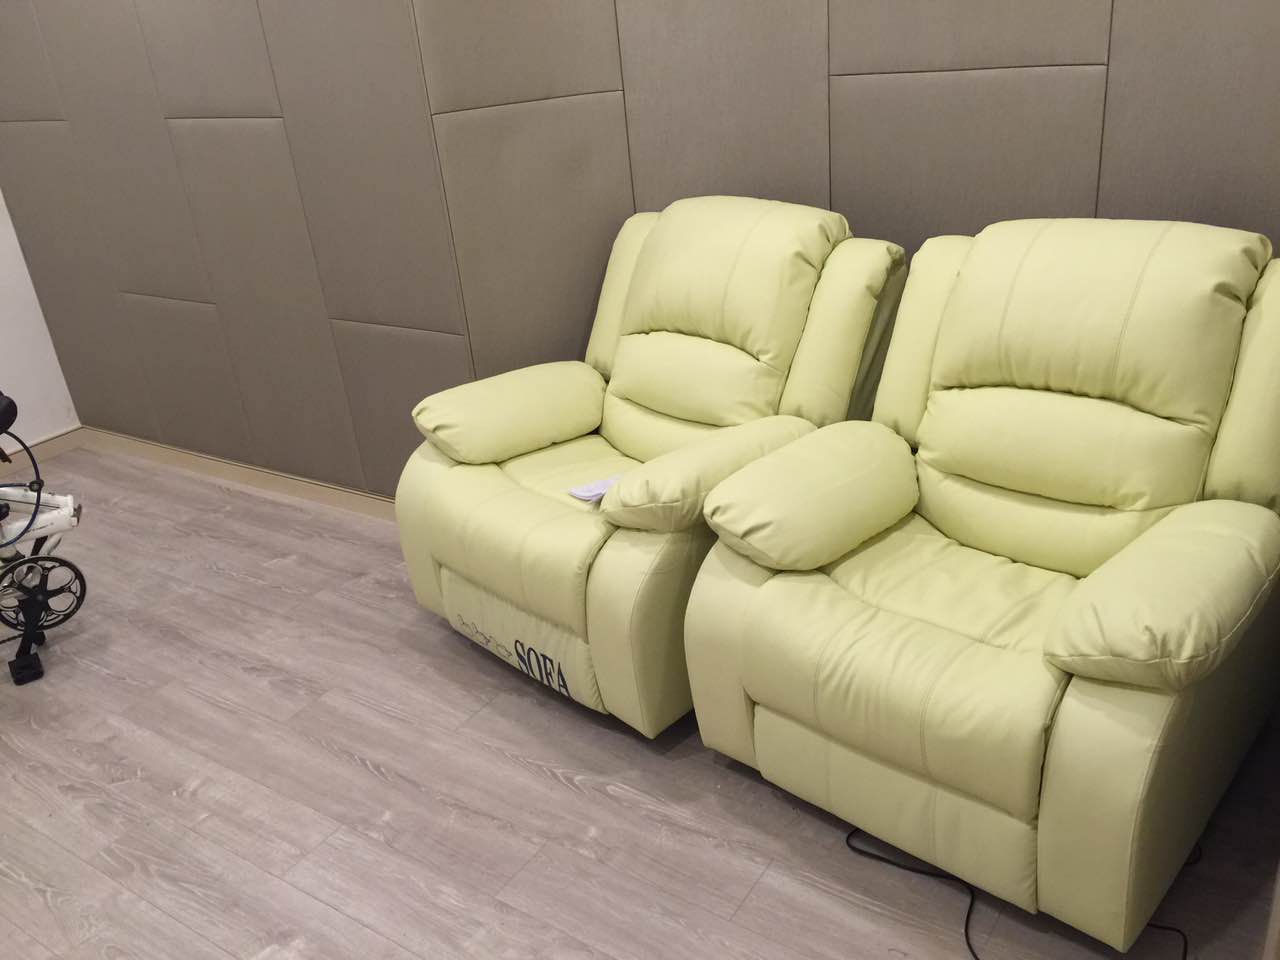 厂家品牌心理辅导沙发椅,功能电动按摩体感音乐沙发批发